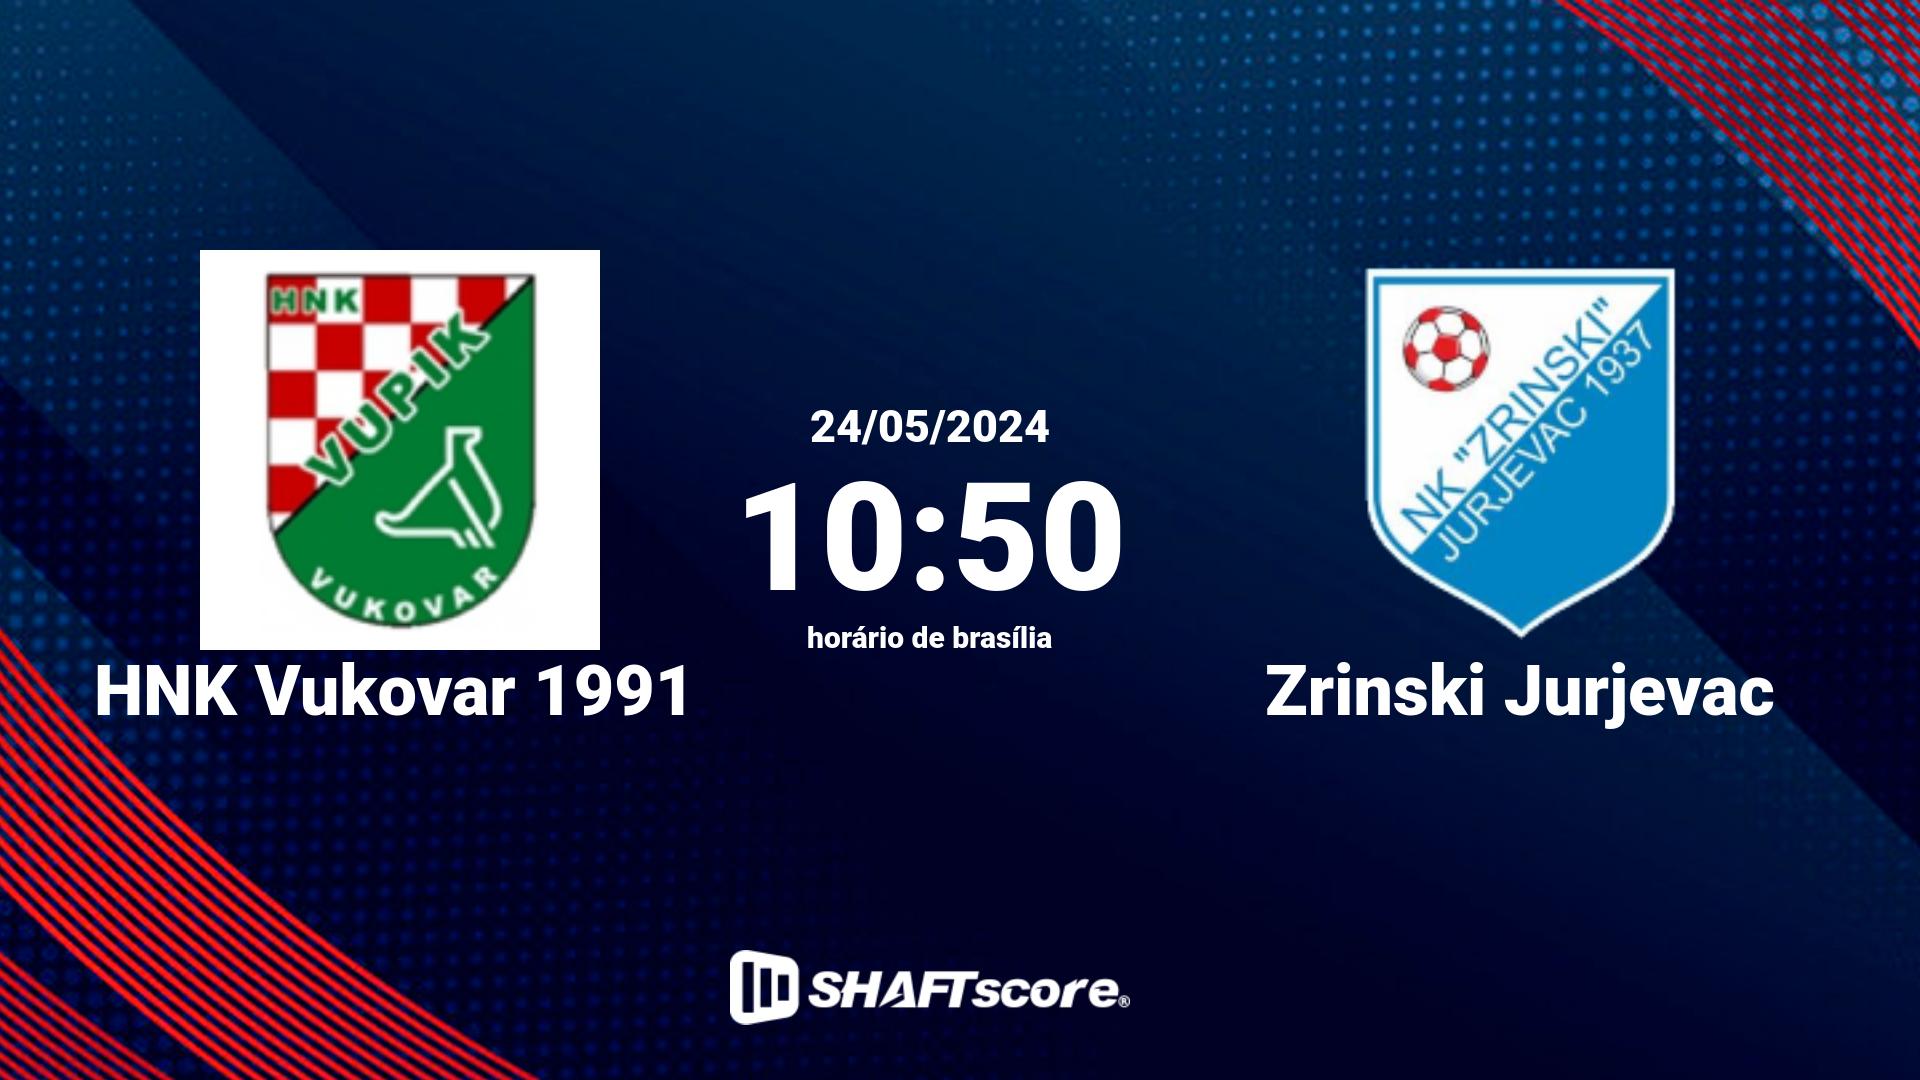 Estatísticas do jogo HNK Vukovar 1991 vs Zrinski Jurjevac 24.05 10:50